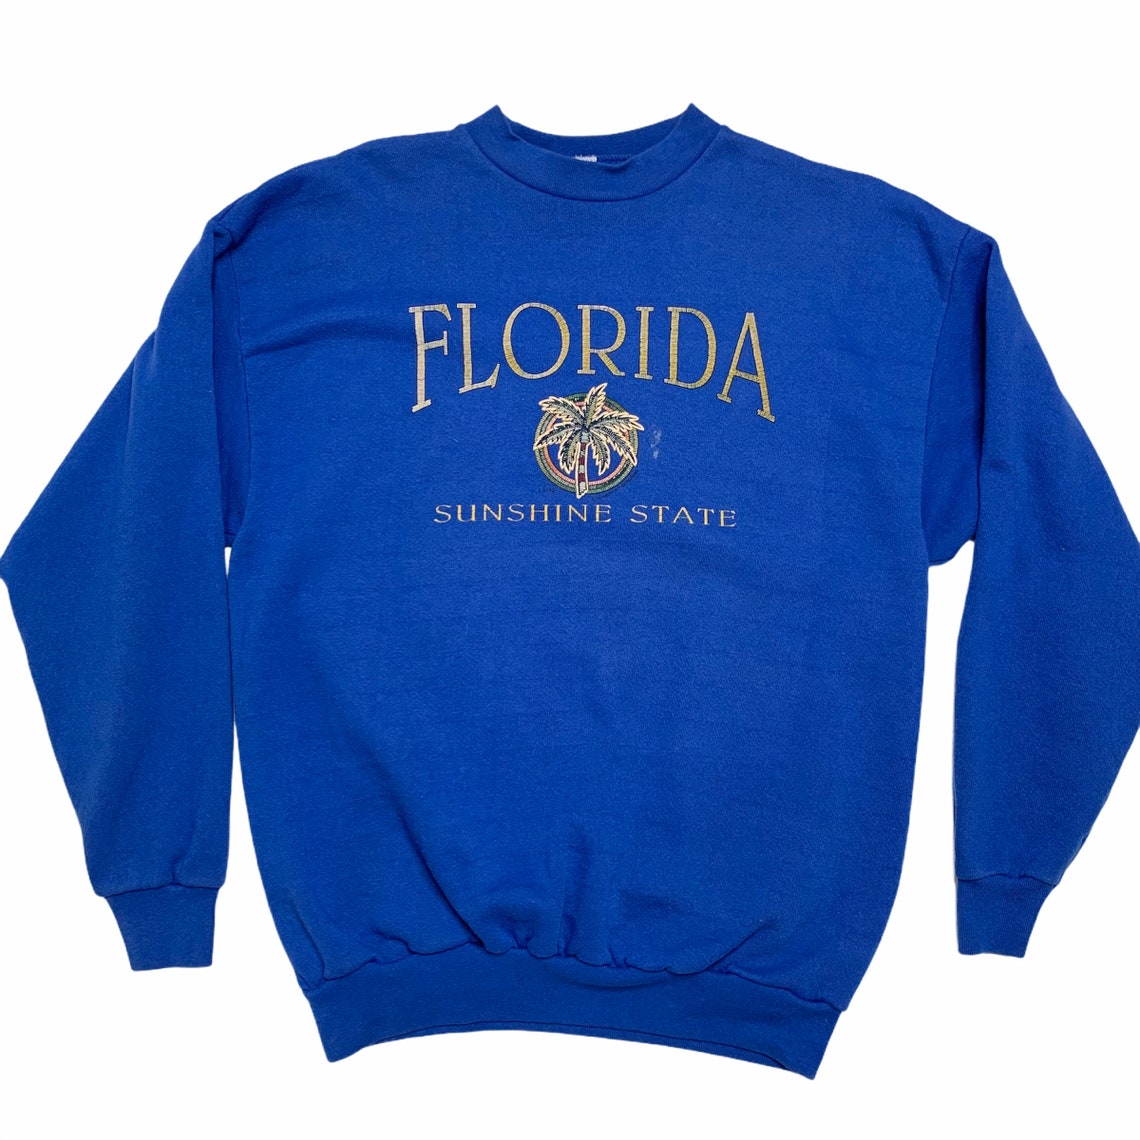 Vintage Florida Sweatshirt Florida the Sunshine State Tultex - Etsy UK